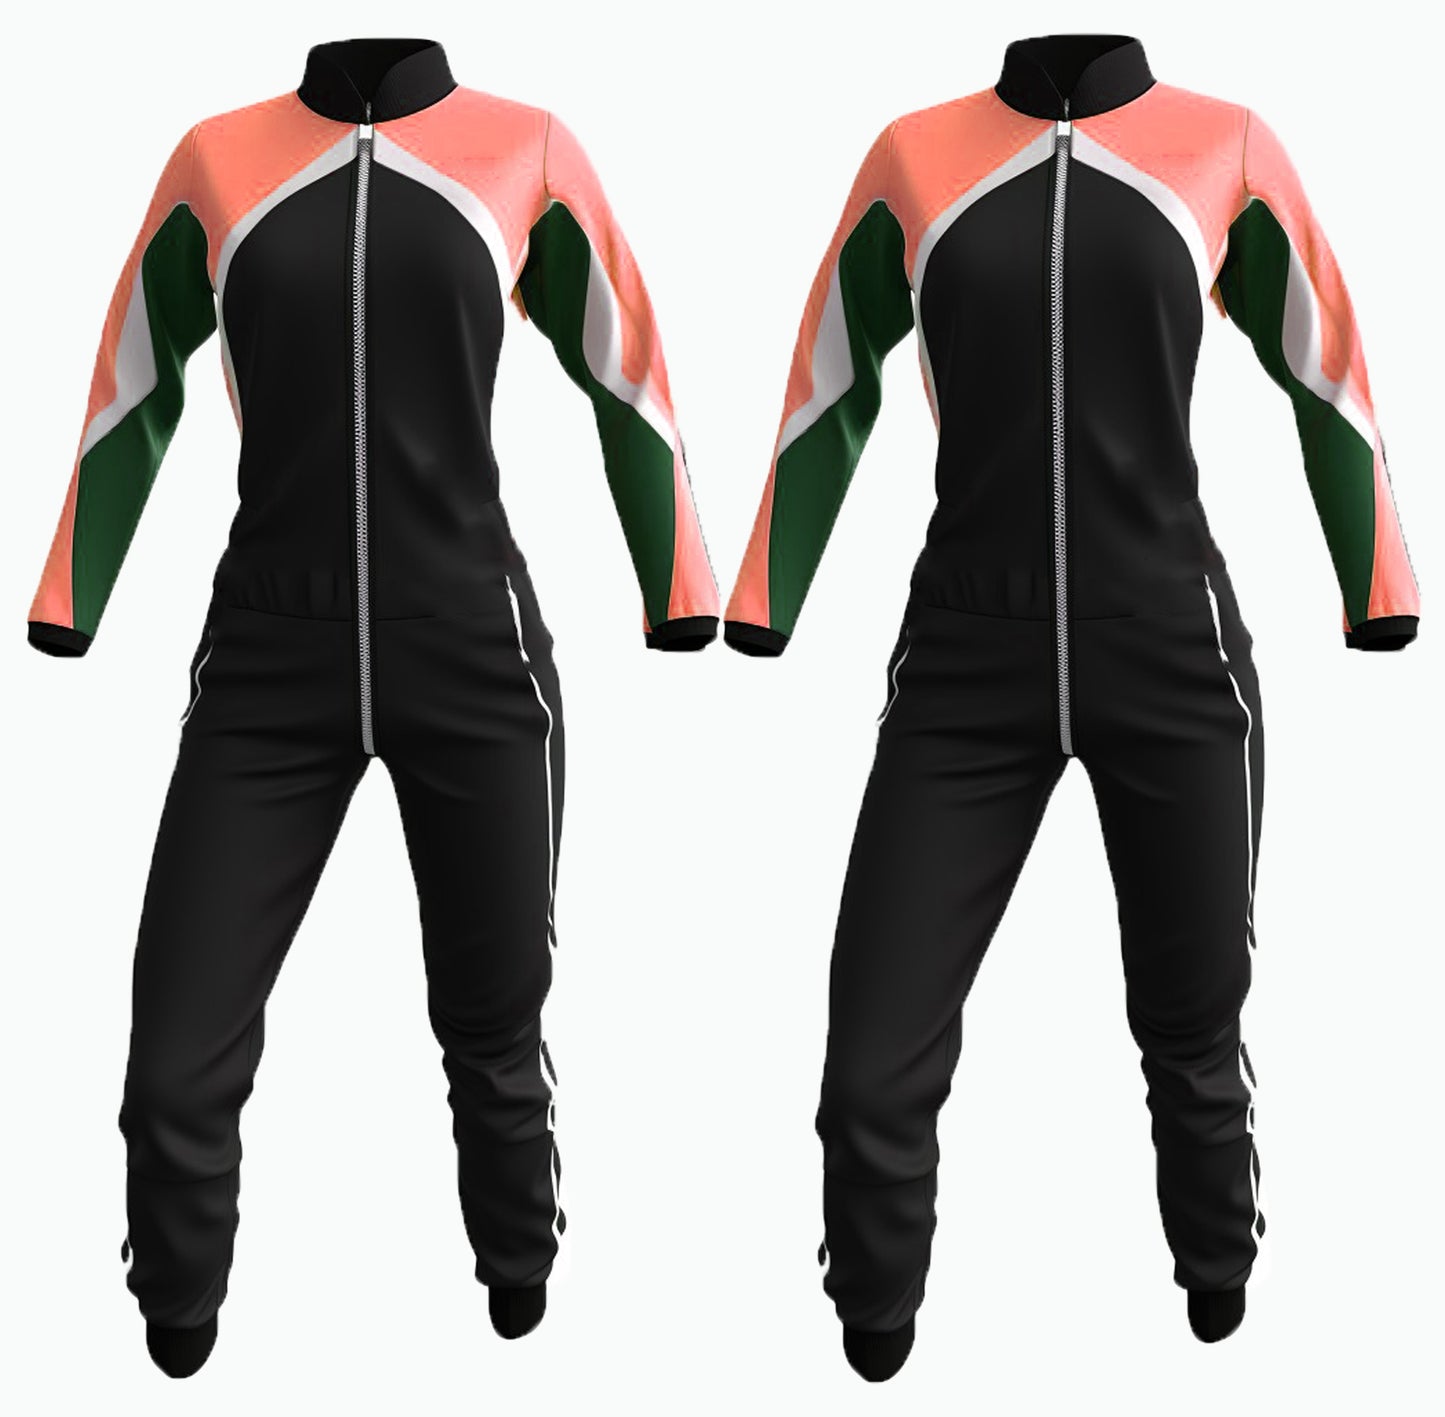 Skydiving Suit, Jumpsuit,Wing suit, Flight Suit, Base Jumping Suit, Parachute Suit, Freefall Suit,Skydiving gear, Windproof suit,Freefly suit se-010